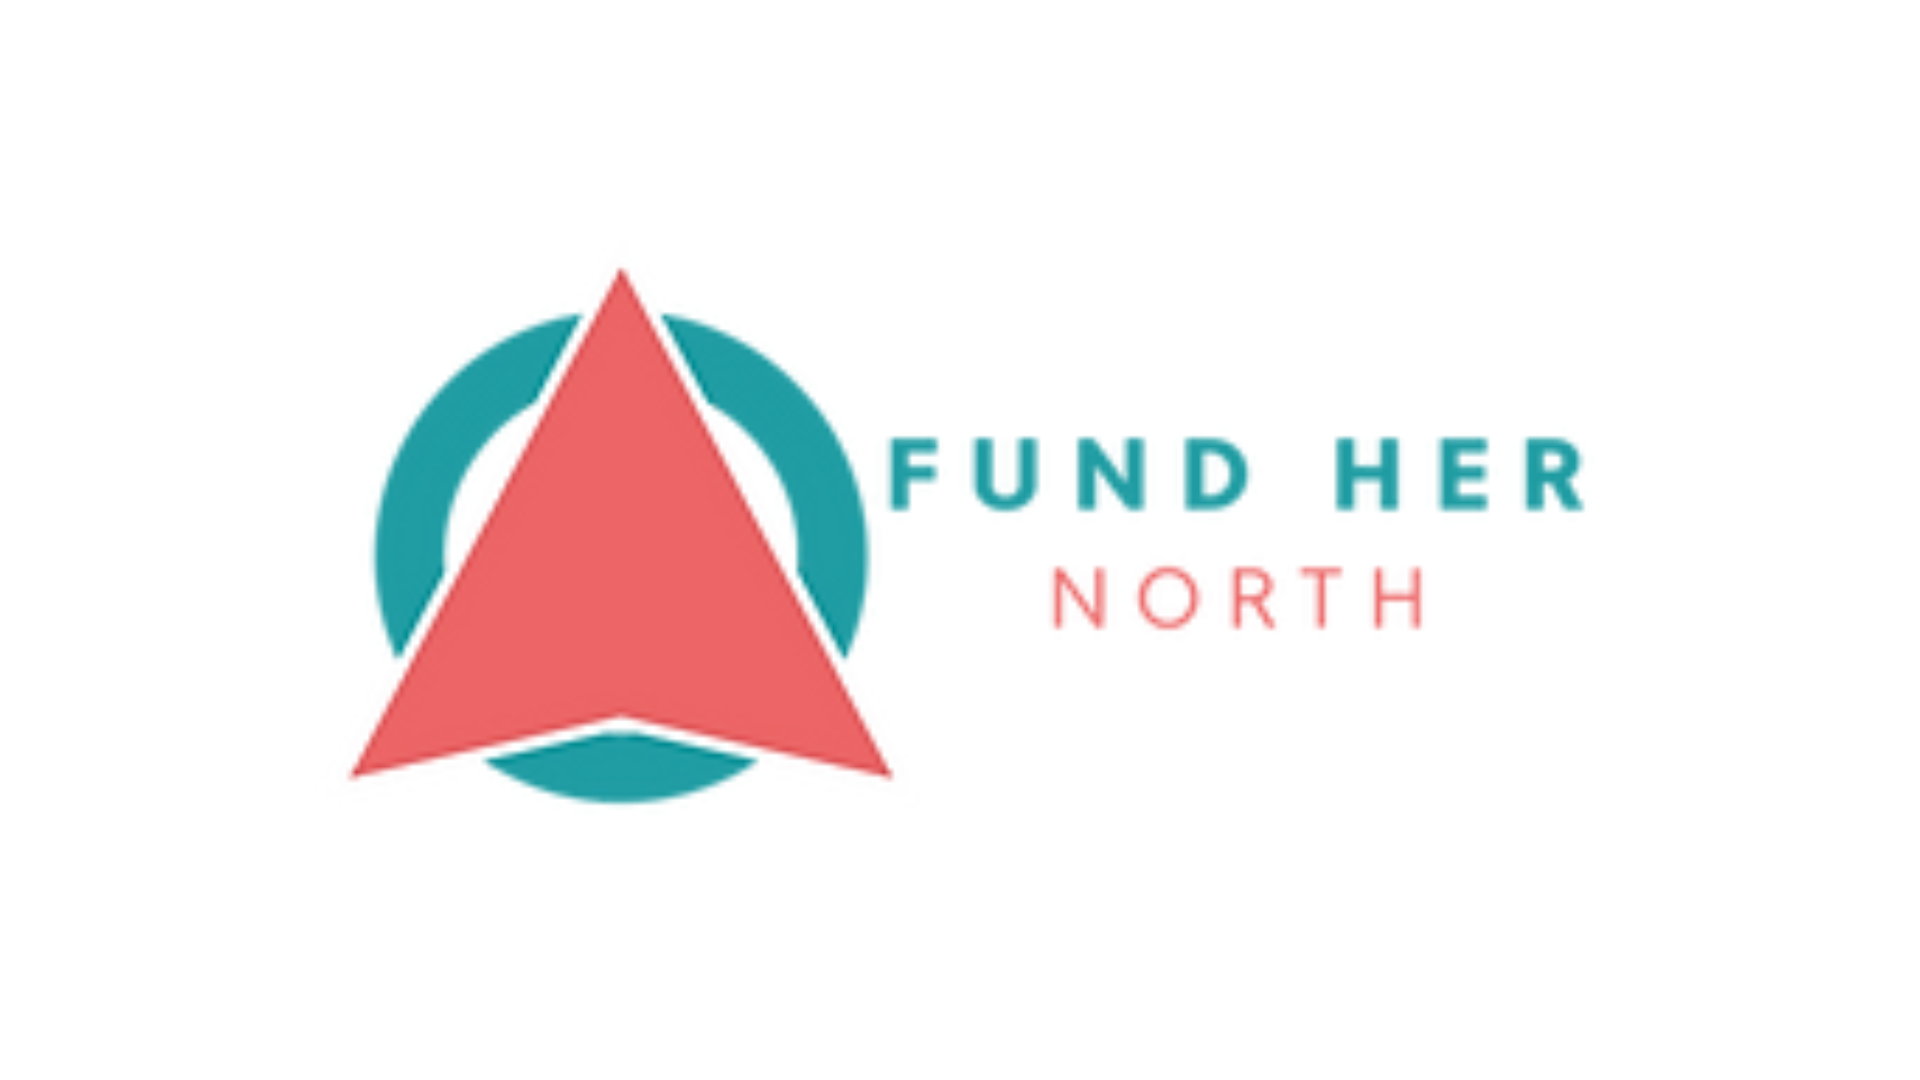 Fund her NOrth logo 